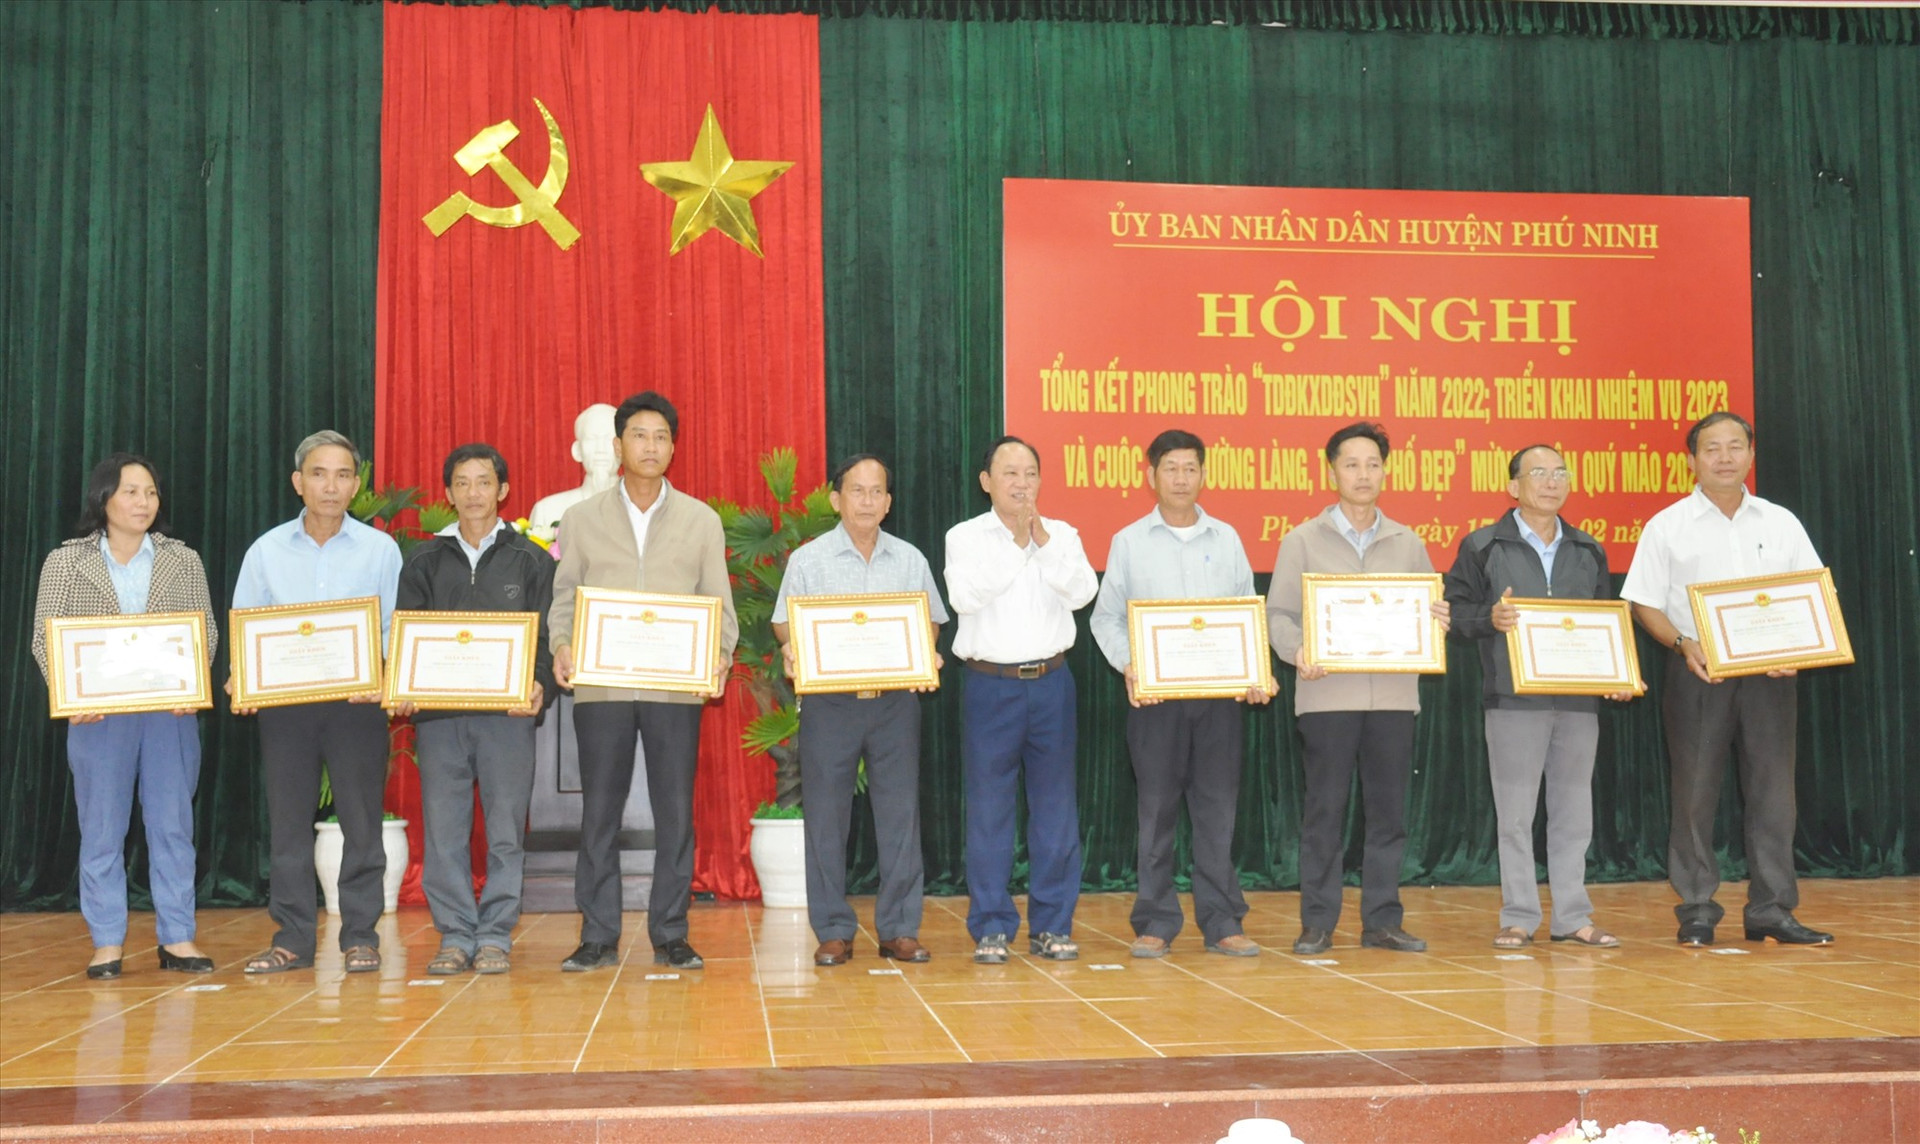 Lãnh đạo huyện Phú Ninh trao tặng Giấy khen của UBND huyện cho các tập thể có thành tích xuất sắc trong phong trào “Toàn dân đoàn kết xây dựng đời sống văn hóa” trên địa bàn huyện năm 2022. Ảnh: N.Đ